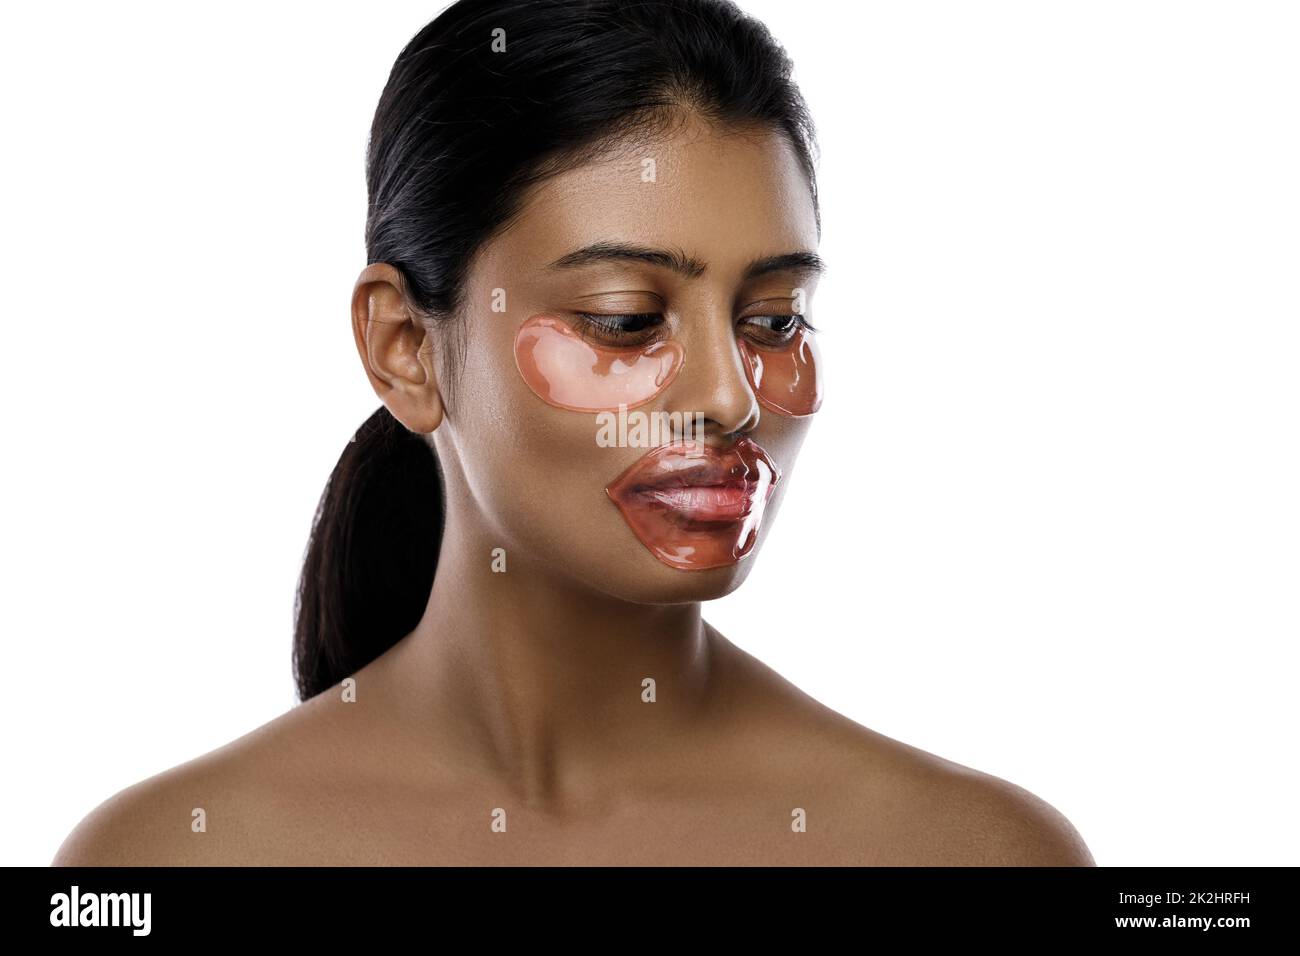 Belle femme indienne avec des timbres hydratants pour les yeux et un masque de lèvre sur son visage Banque D'Images